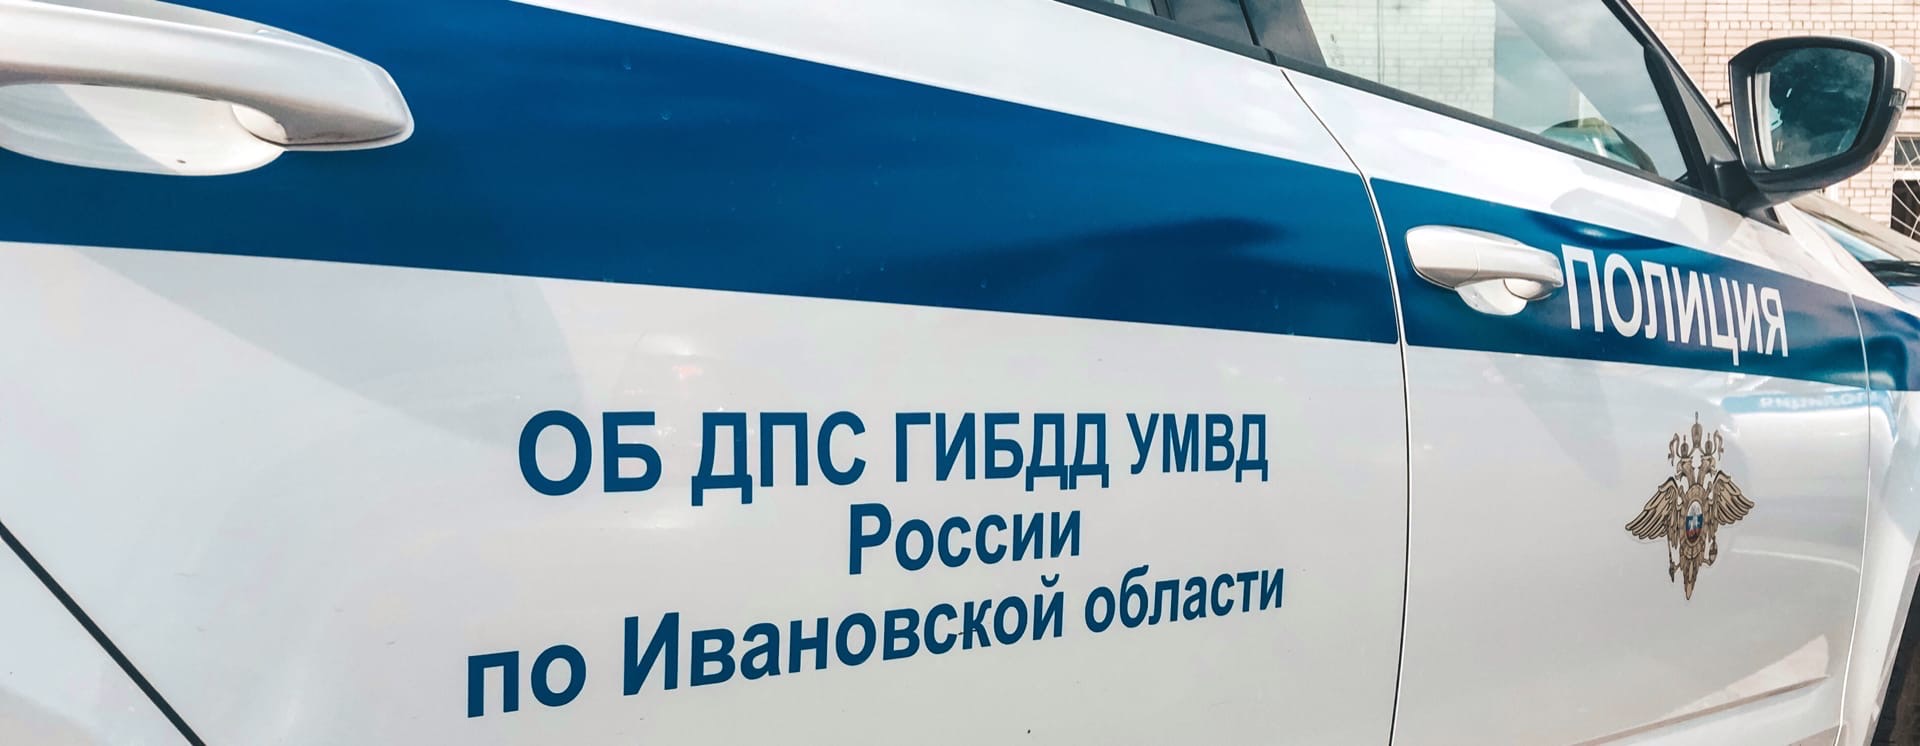 За минувшие выходные в Ивановской области привлекли к ответственности 8 нетрезвых водителей